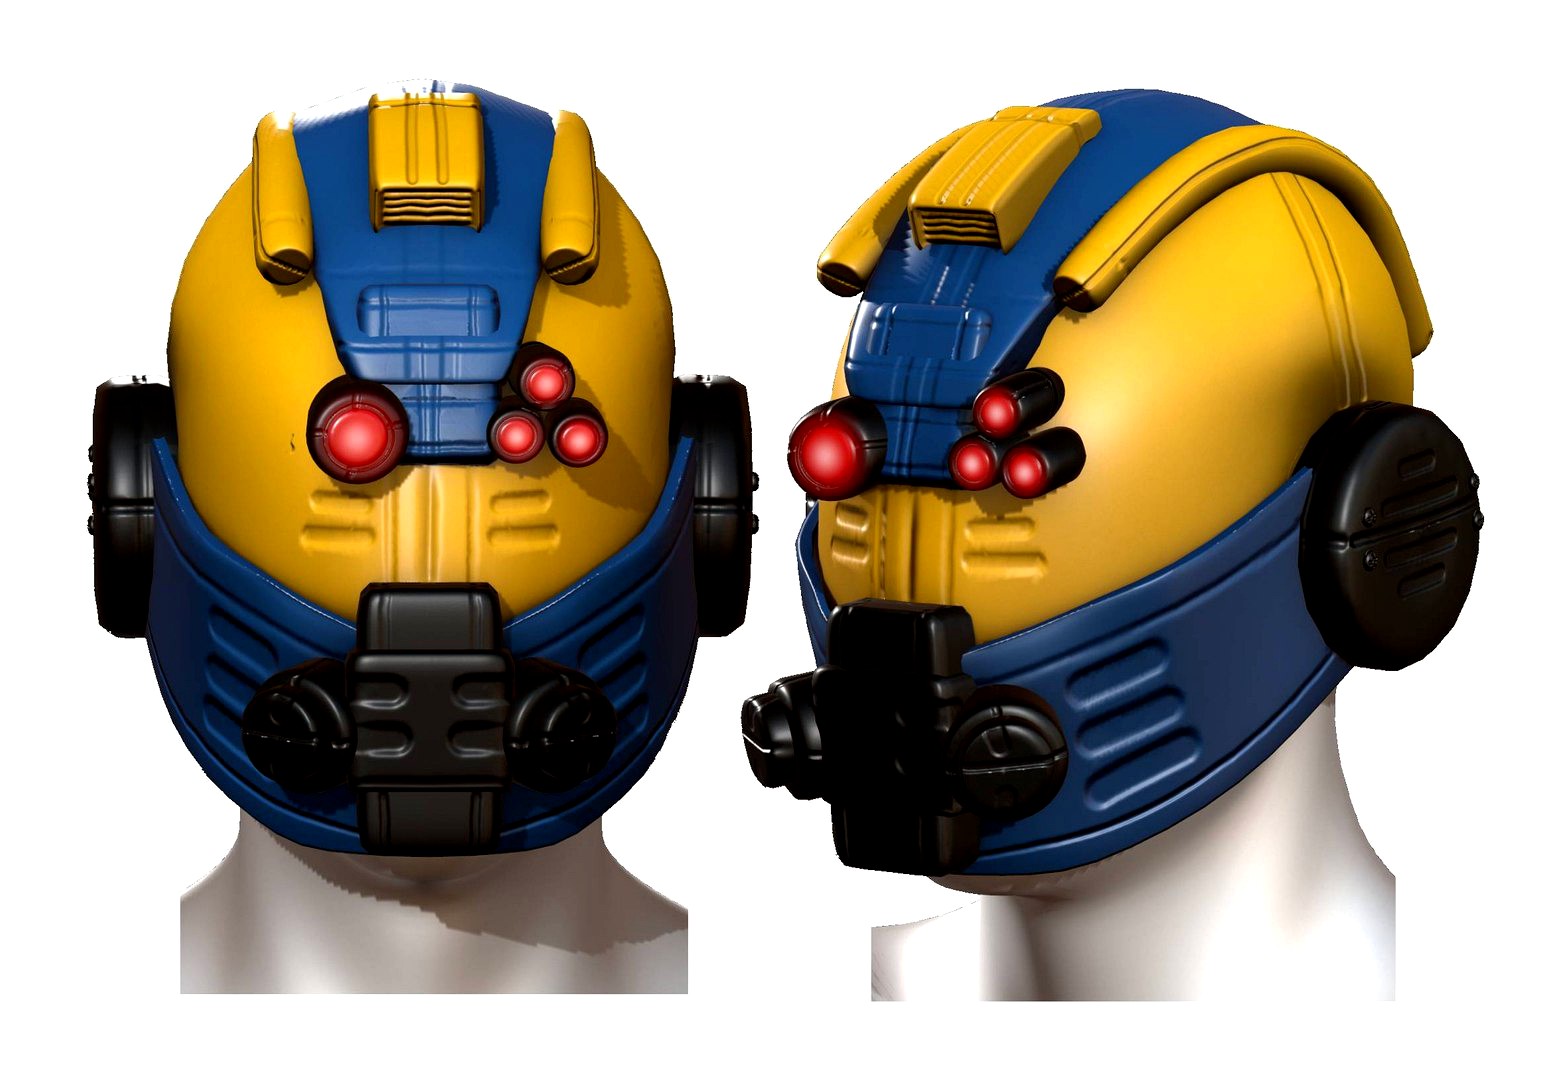 Helmet scifi fantasy futuristic military Scifi